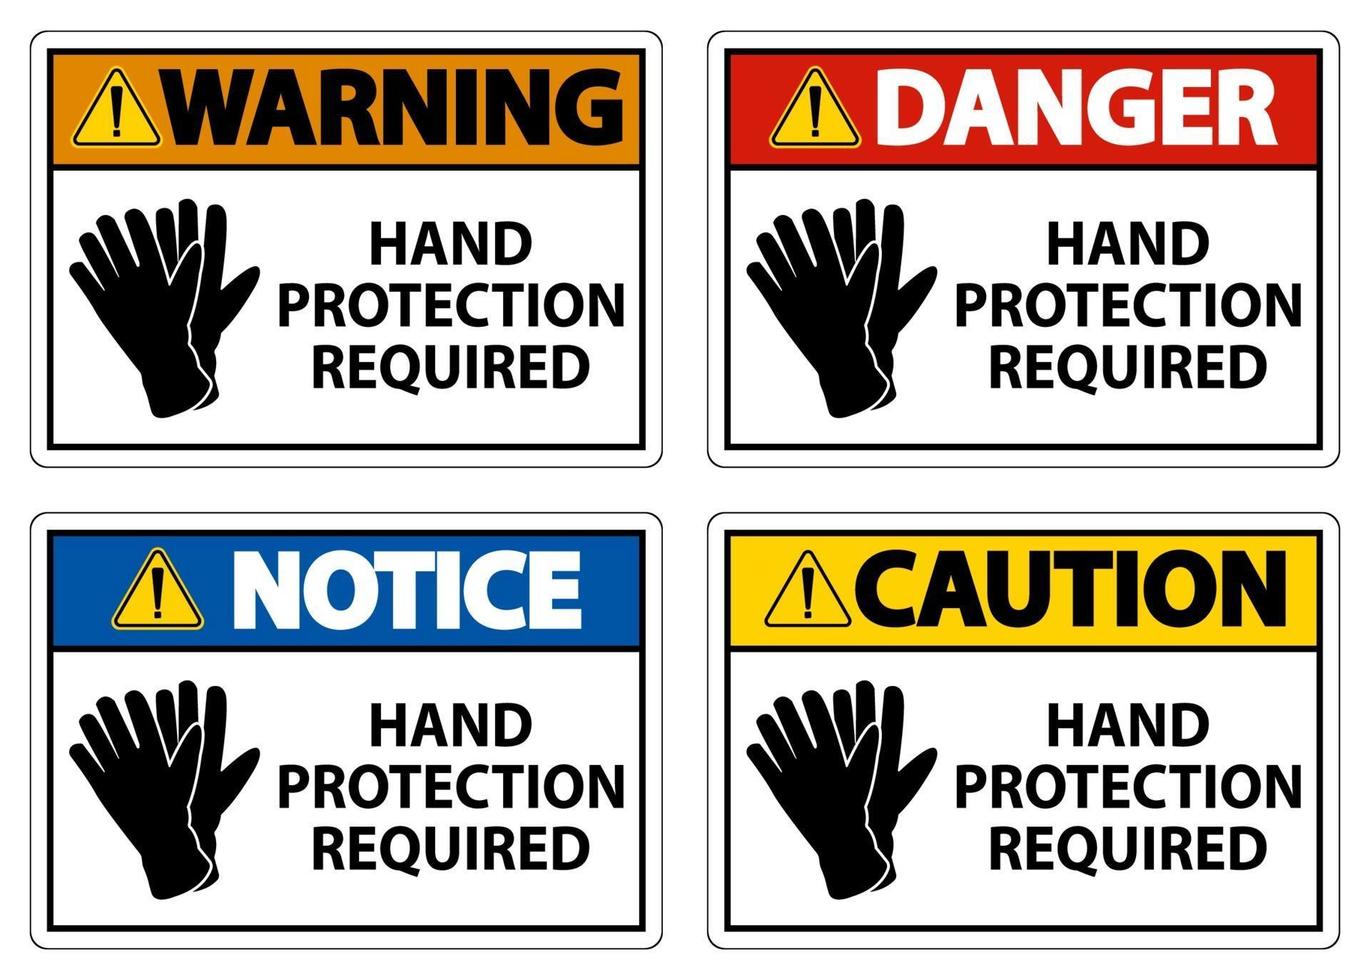 Protección de manos requerida signo establecido sobre fondo blanco. vector